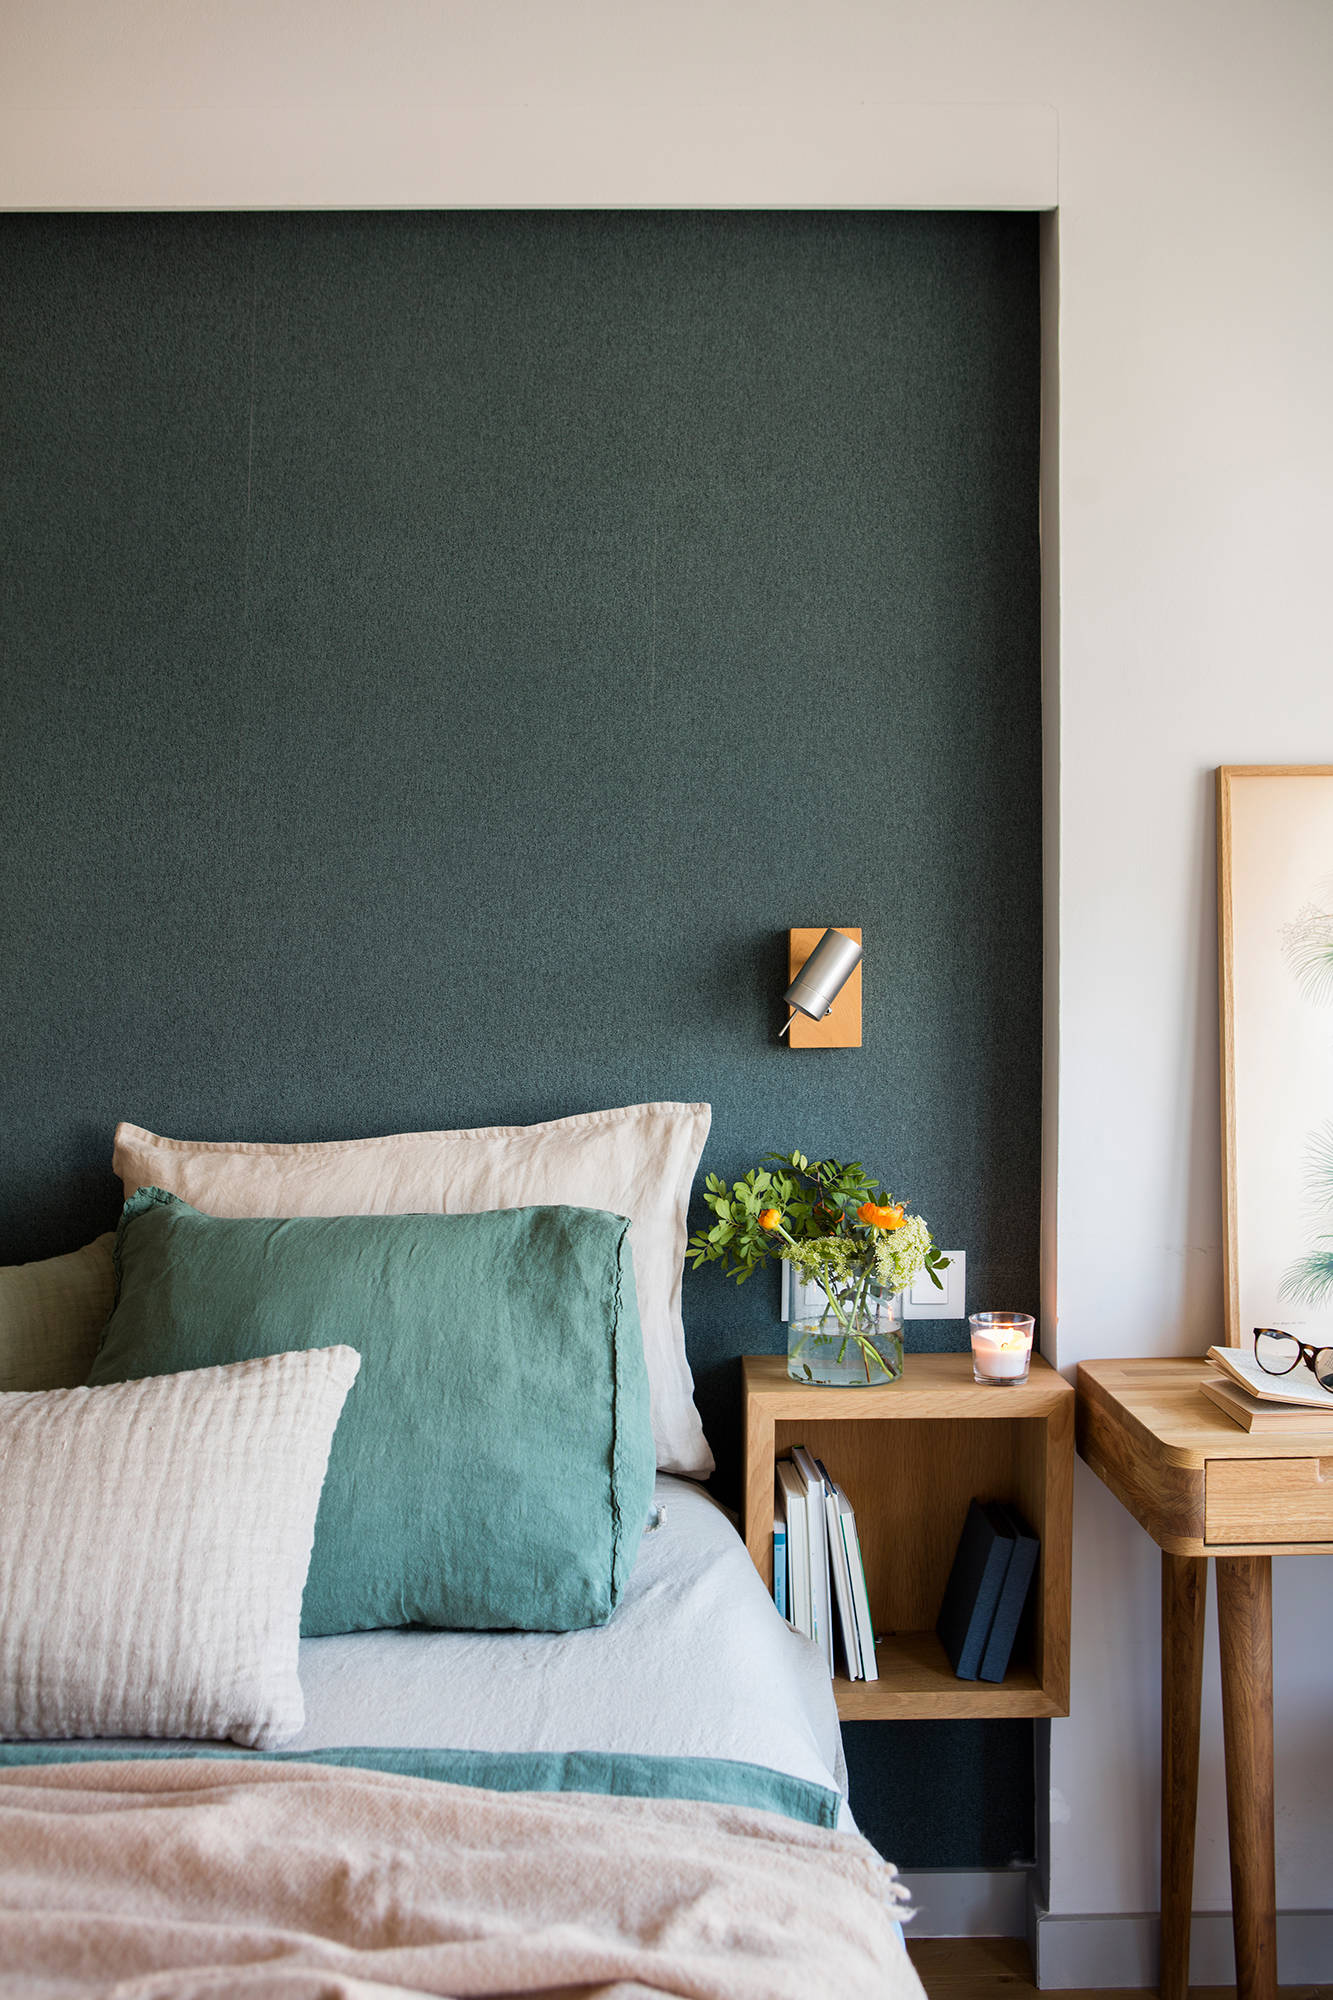 Dormitorio con papel pintado imitación tejido en la pared del cabecero